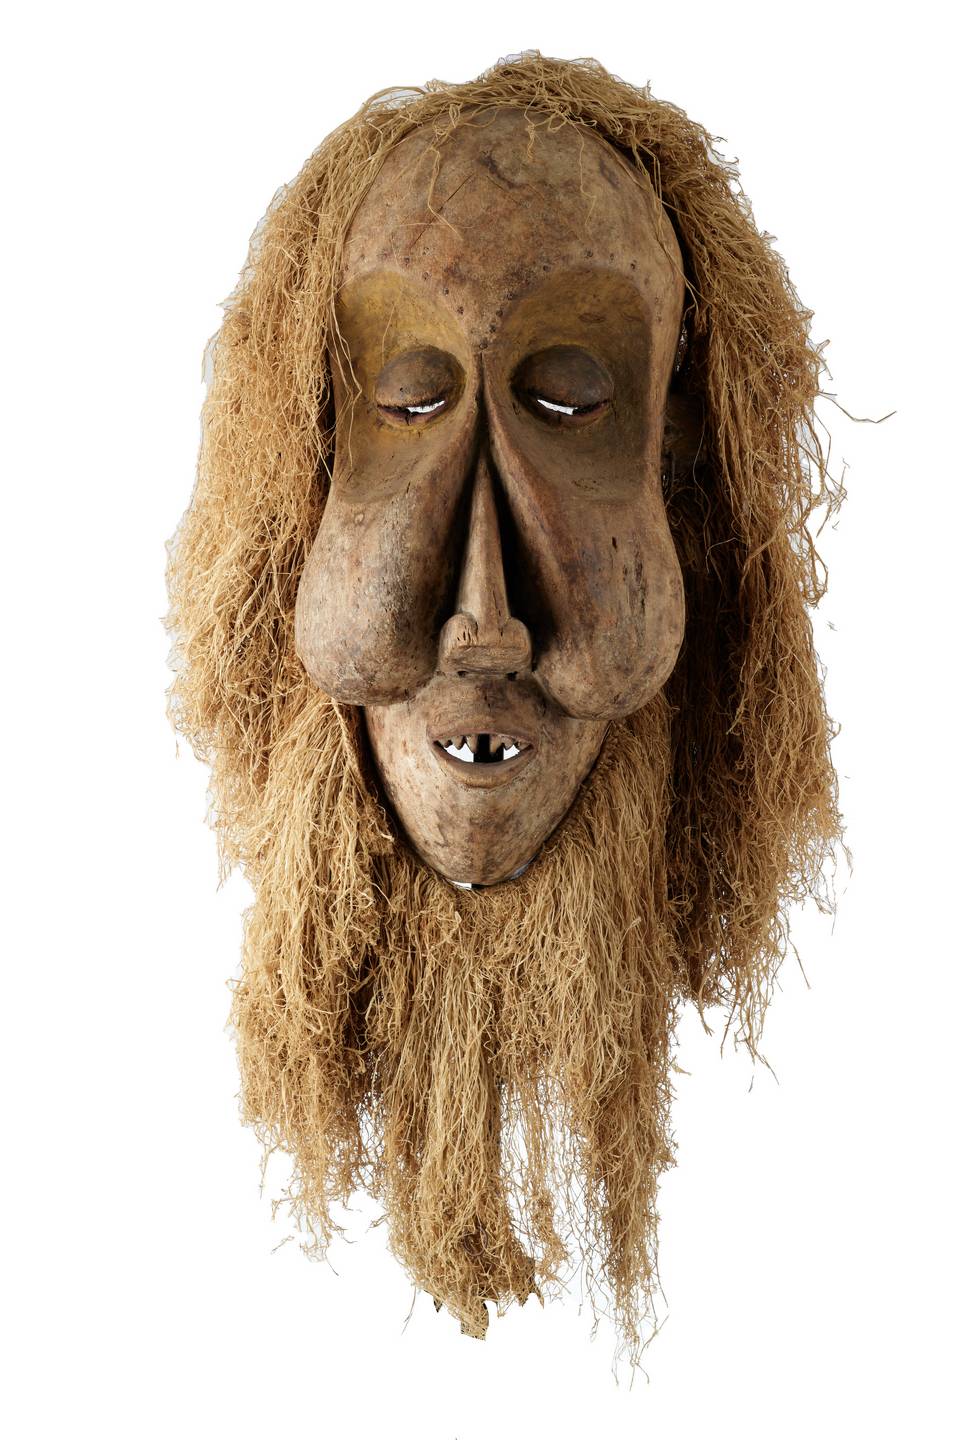 Yaka.(Masque) n°1971, d`afrique : R.D.C., statuette Yaka.(Masque) n°1971, masque ancien africain Yaka.(Masque) n°1971, art du R.D.C. - Art Africain, collection privées Belgique. Statue africaine de la tribu des Yaka.(Masque) n°1971, provenant du R.D.C., 1971: Vieux masque KAKUNGU que on trouve chez les Yaka et les Suku;masque de 72cm.h.avec des grosses joues gonflées, de grands yeux,une coiffure dense en rafia. Anciennement le bas des joues et le menton étaient couvert de Kaolin blanc.masque représentant l